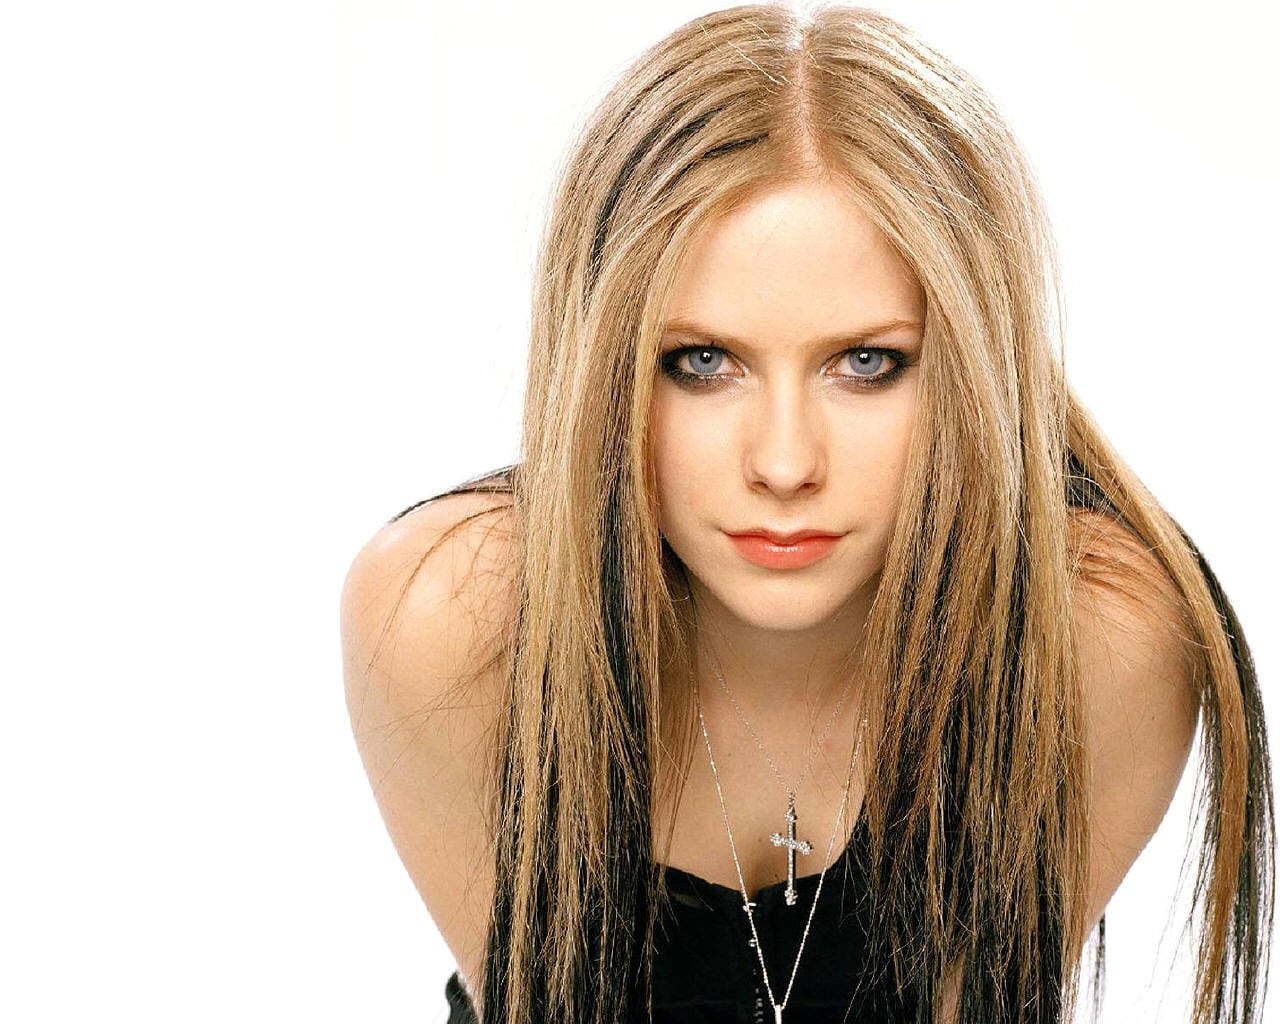 10. Avril Lavigne - wide 6